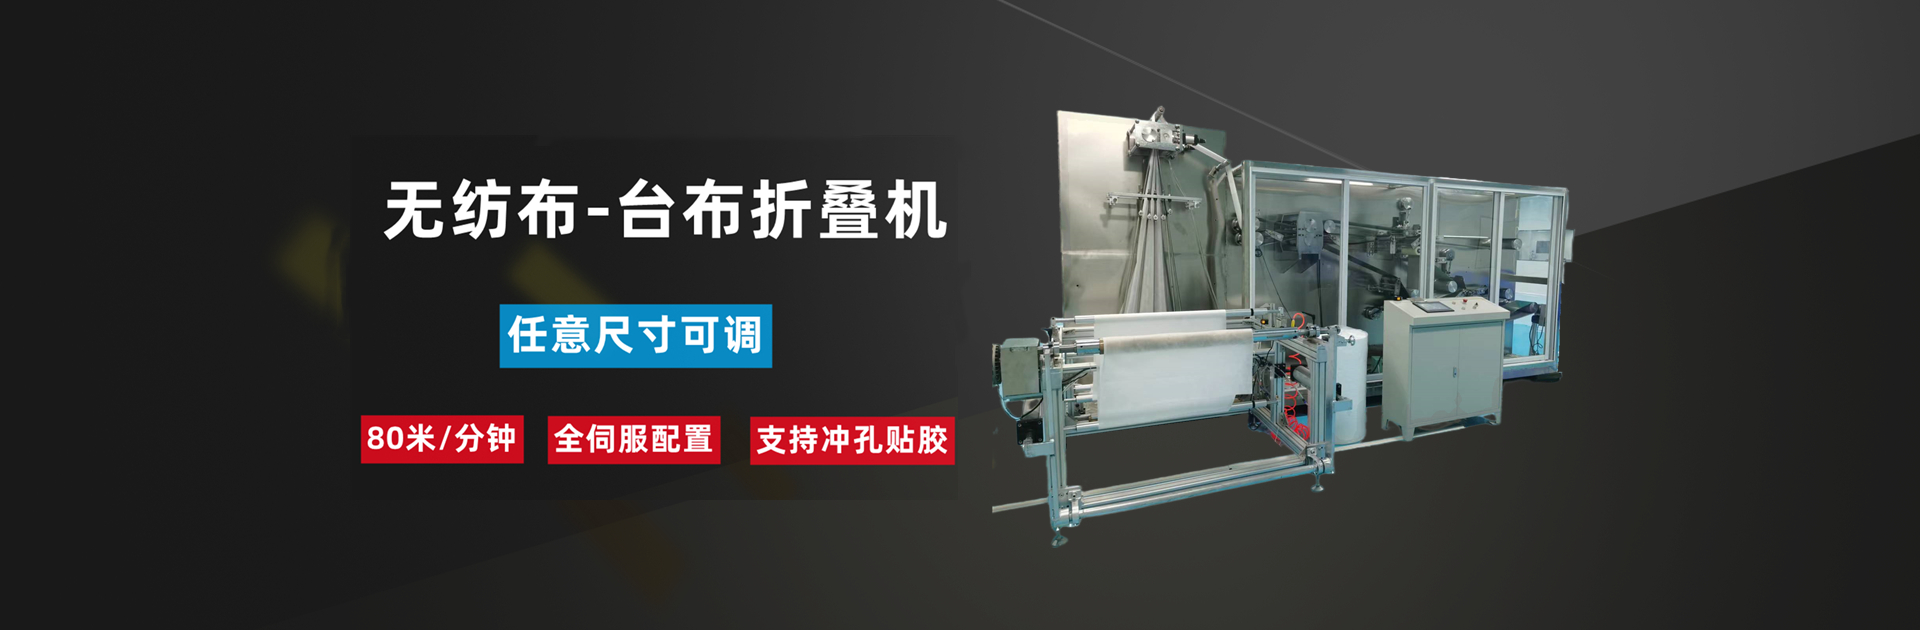 Lianyungang Zhixinjie Machinery Co., Ltd-10年專注研發生產